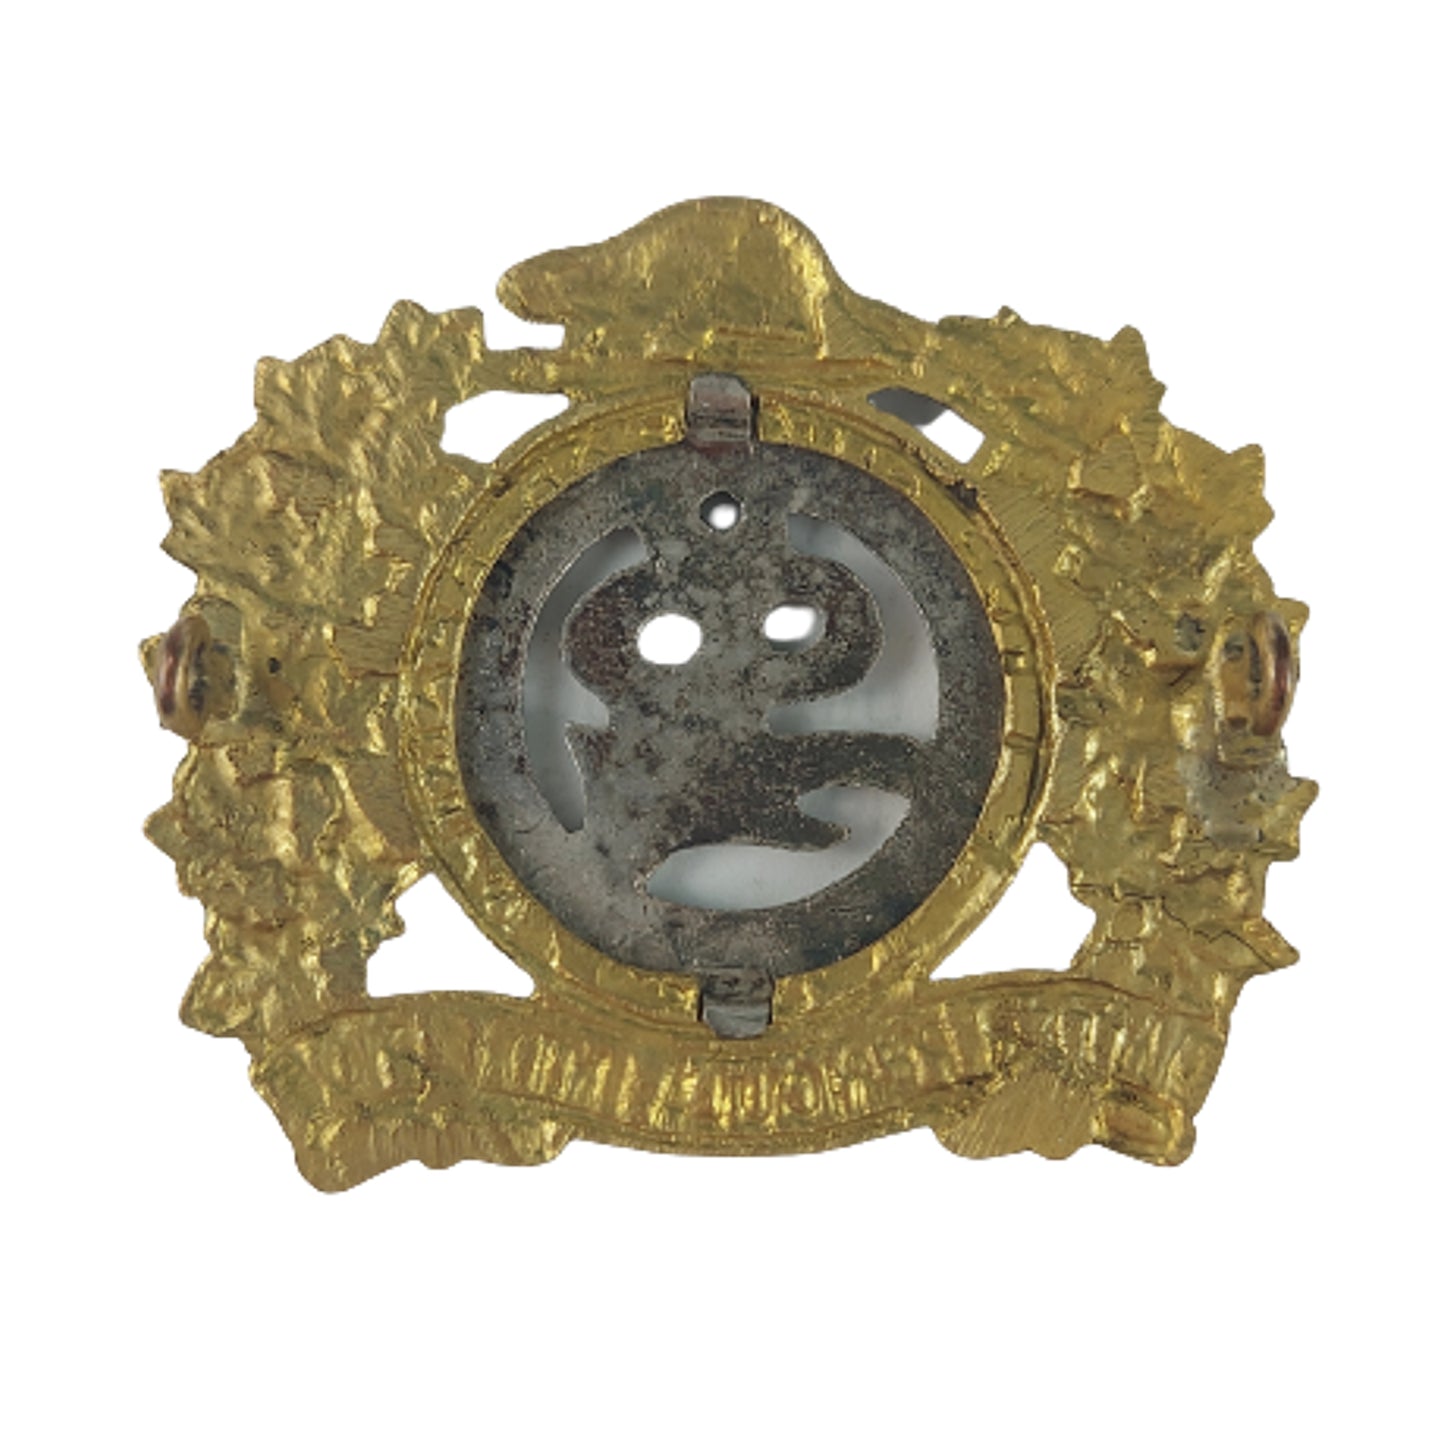 1922 Design Lake Superior Regiment Cap Badge